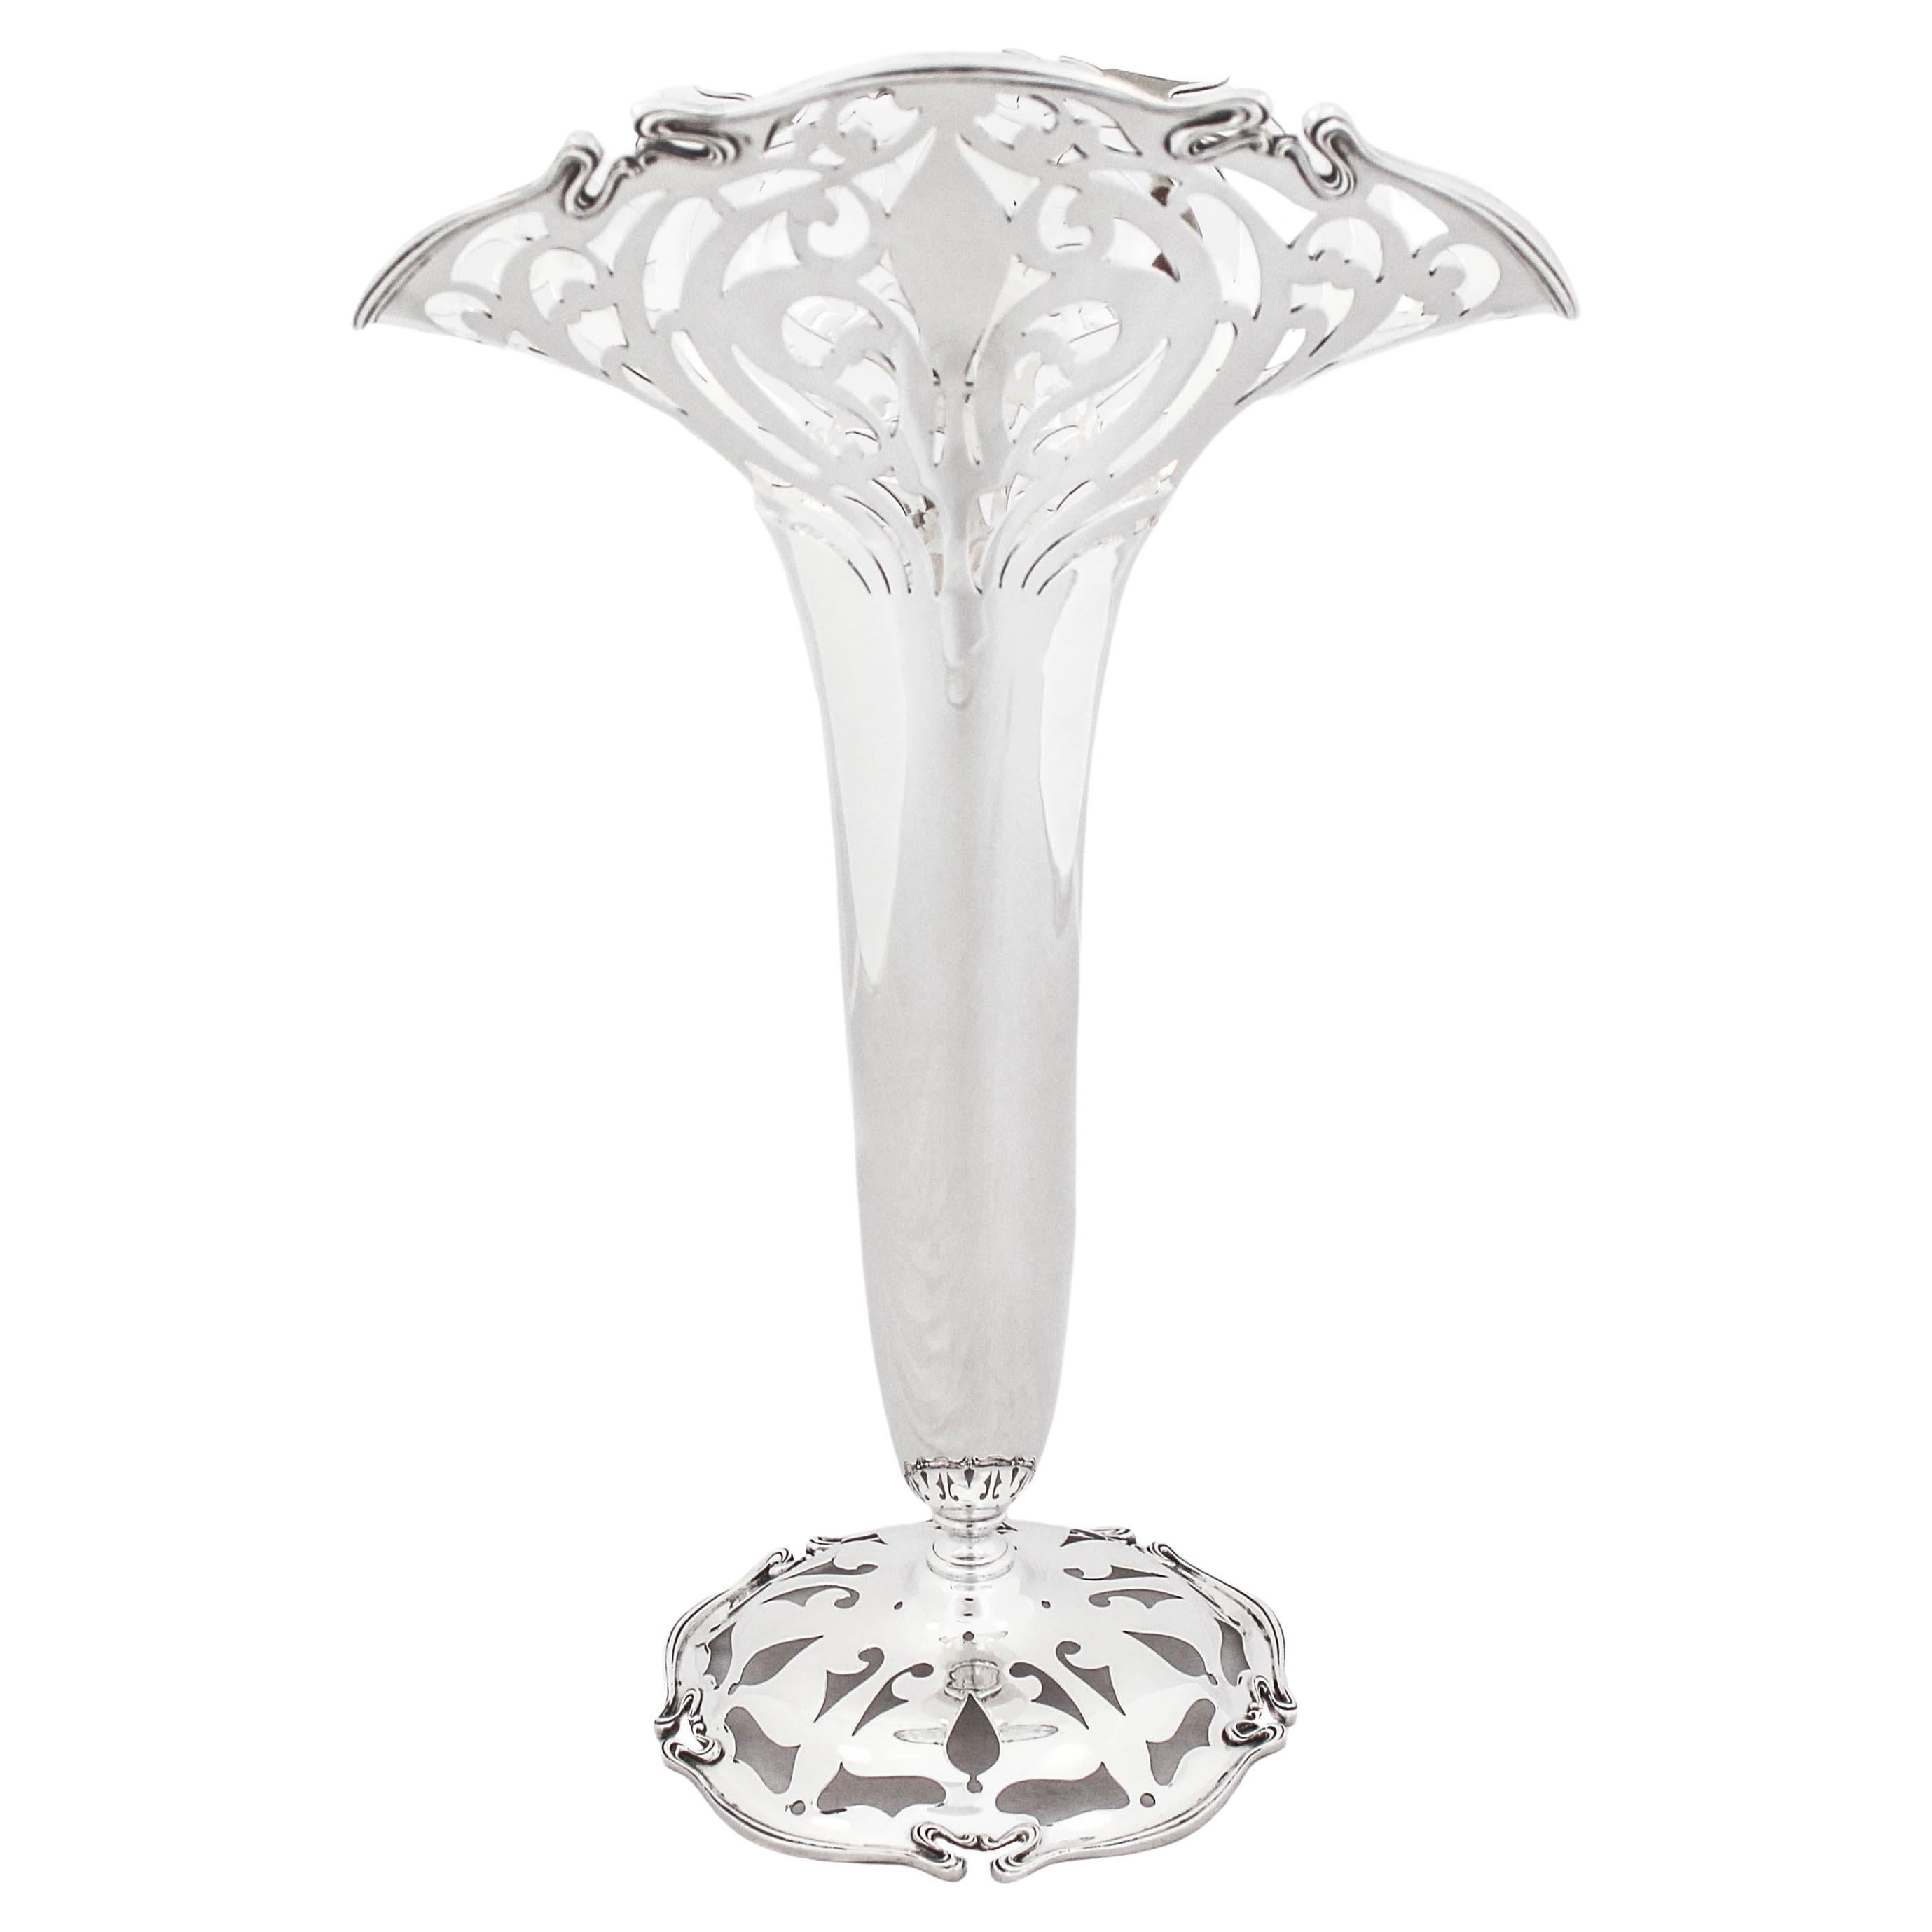 Sterling Silver Art Nouveau Vase